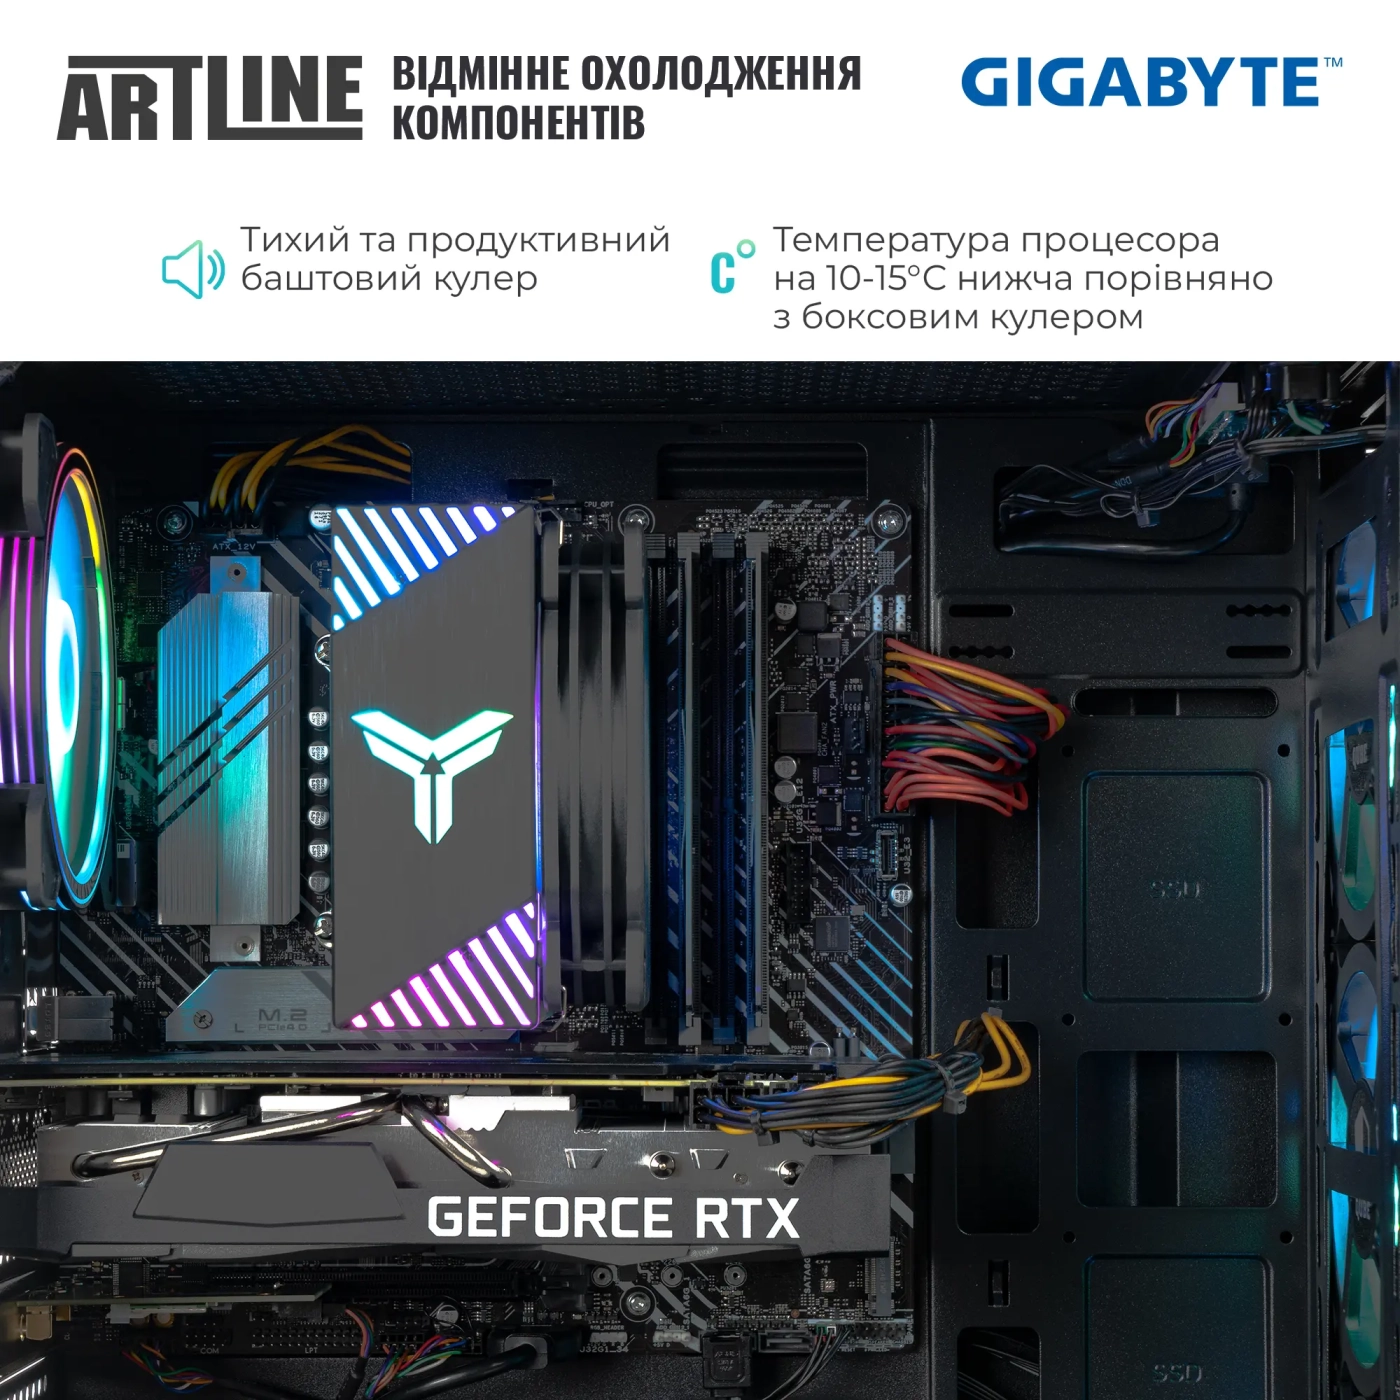 Купить Компьютер ARTLINE Gaming X55v48GGB GIGABYTE Special Edition (X55v48GGB) - фото 5